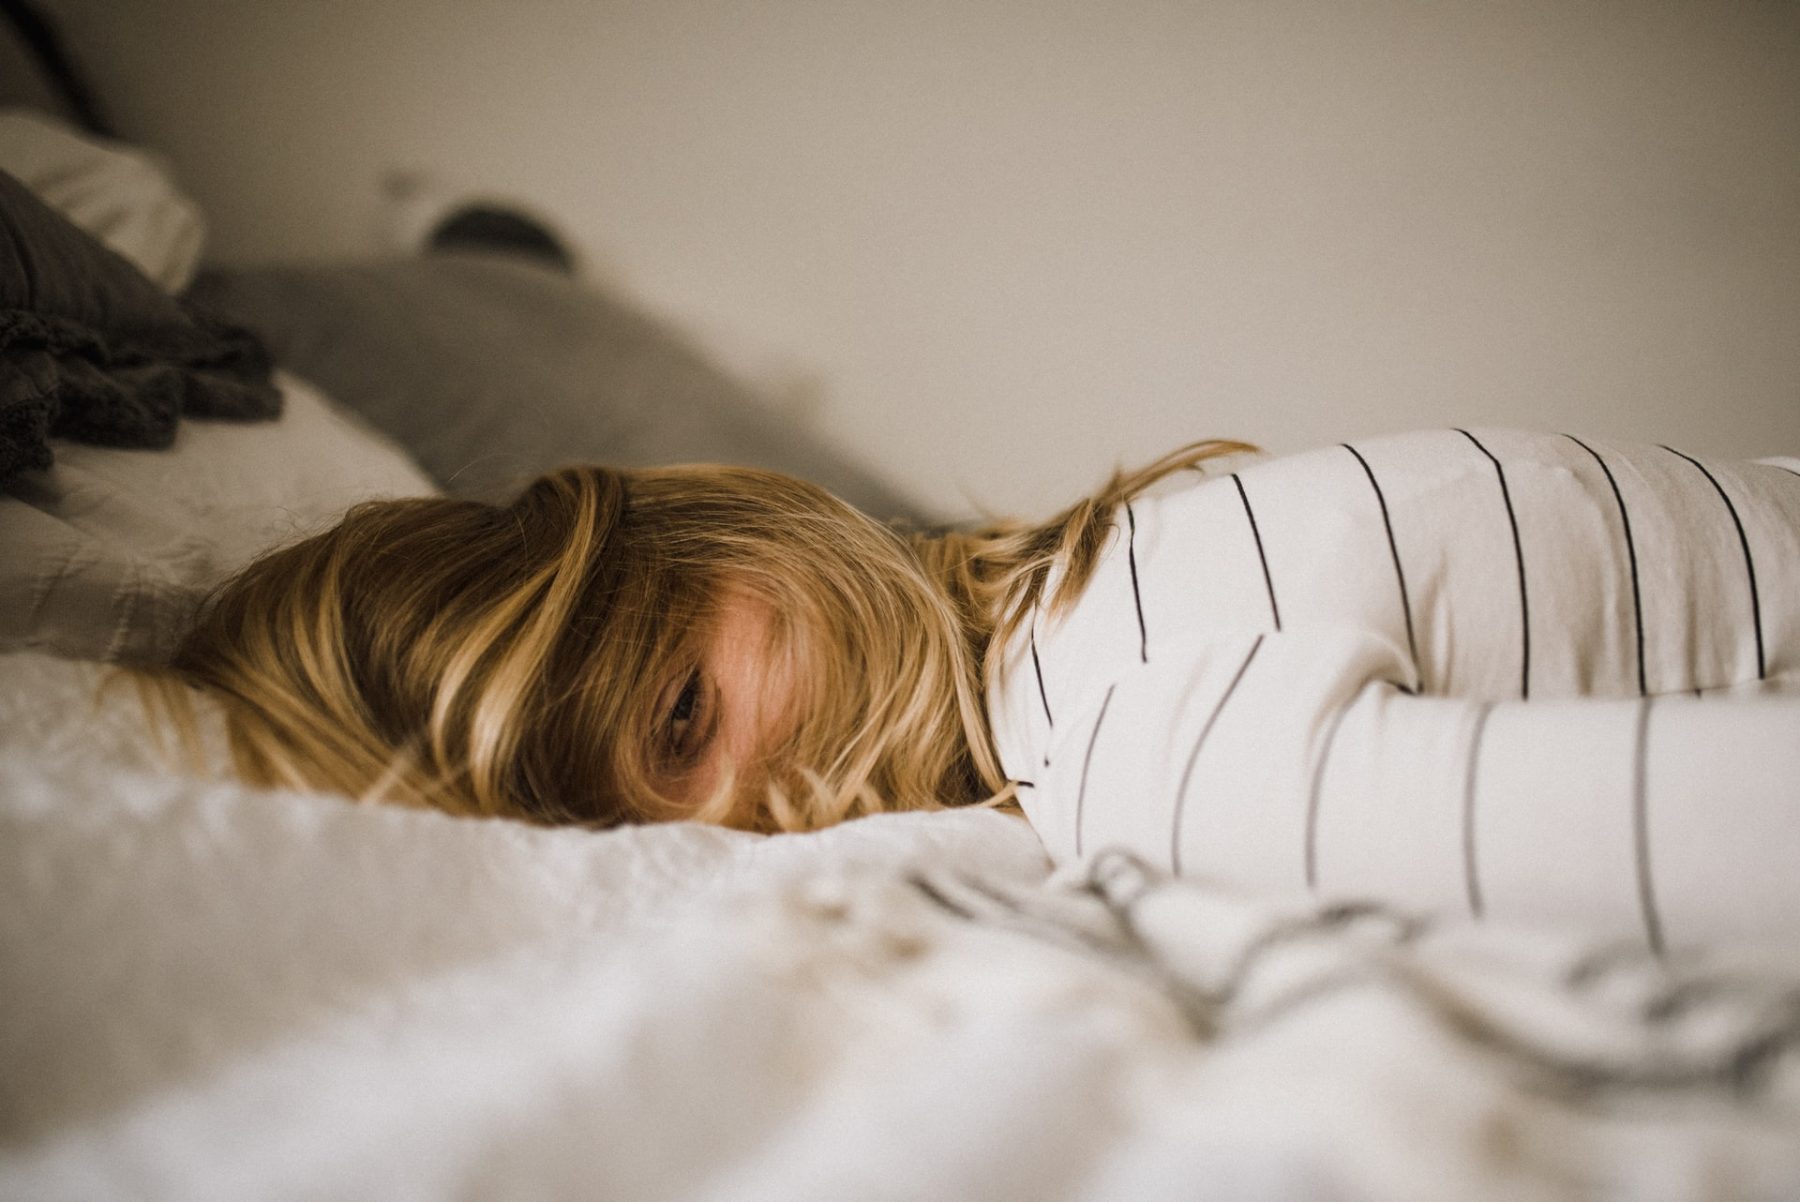 Αϋπνία συναισθήματα: Η έλλειψη ύπνου δεν επηρεάζει την ερμηνεία των συναισθημάτων,  σύμφωνα με νέα μελέτη